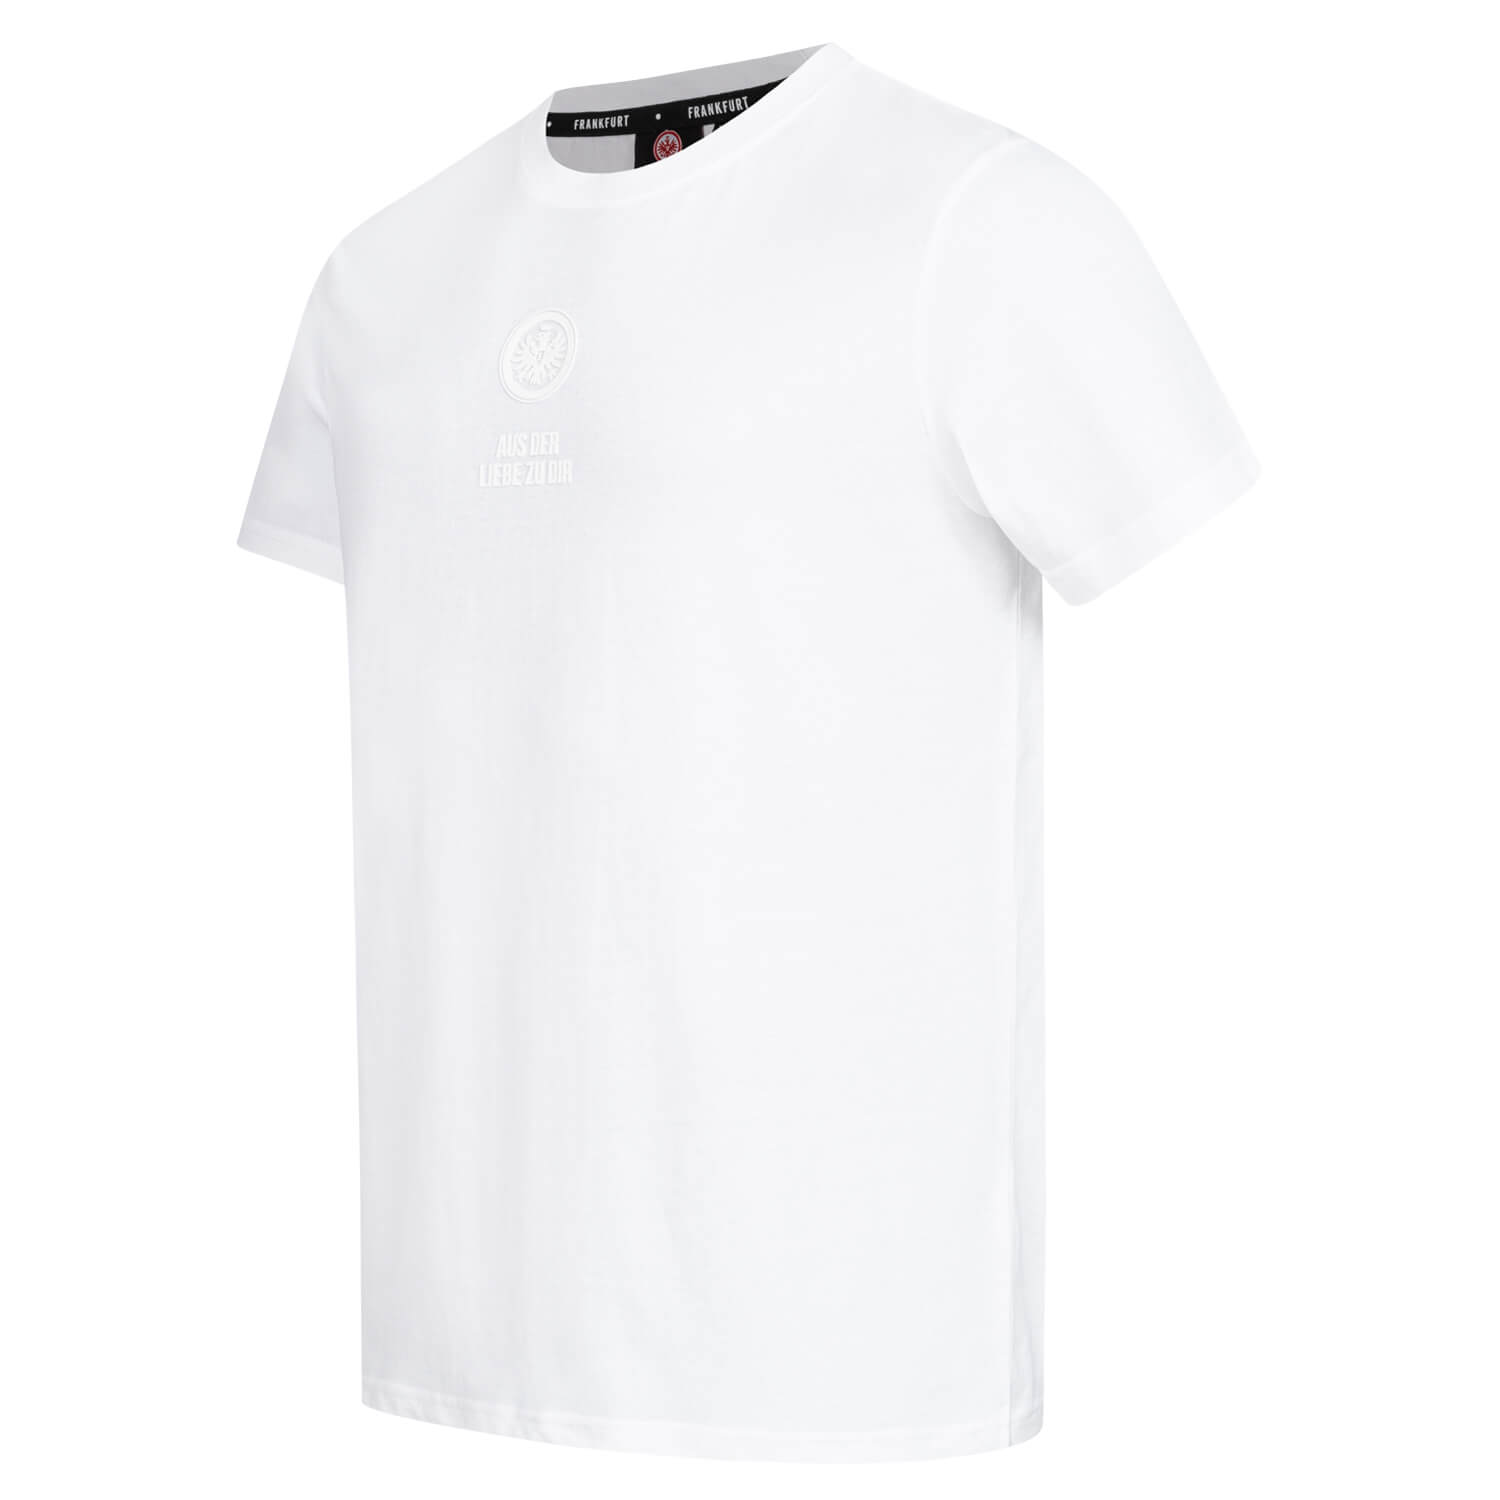 Bild 3: T-Shirt White Badge